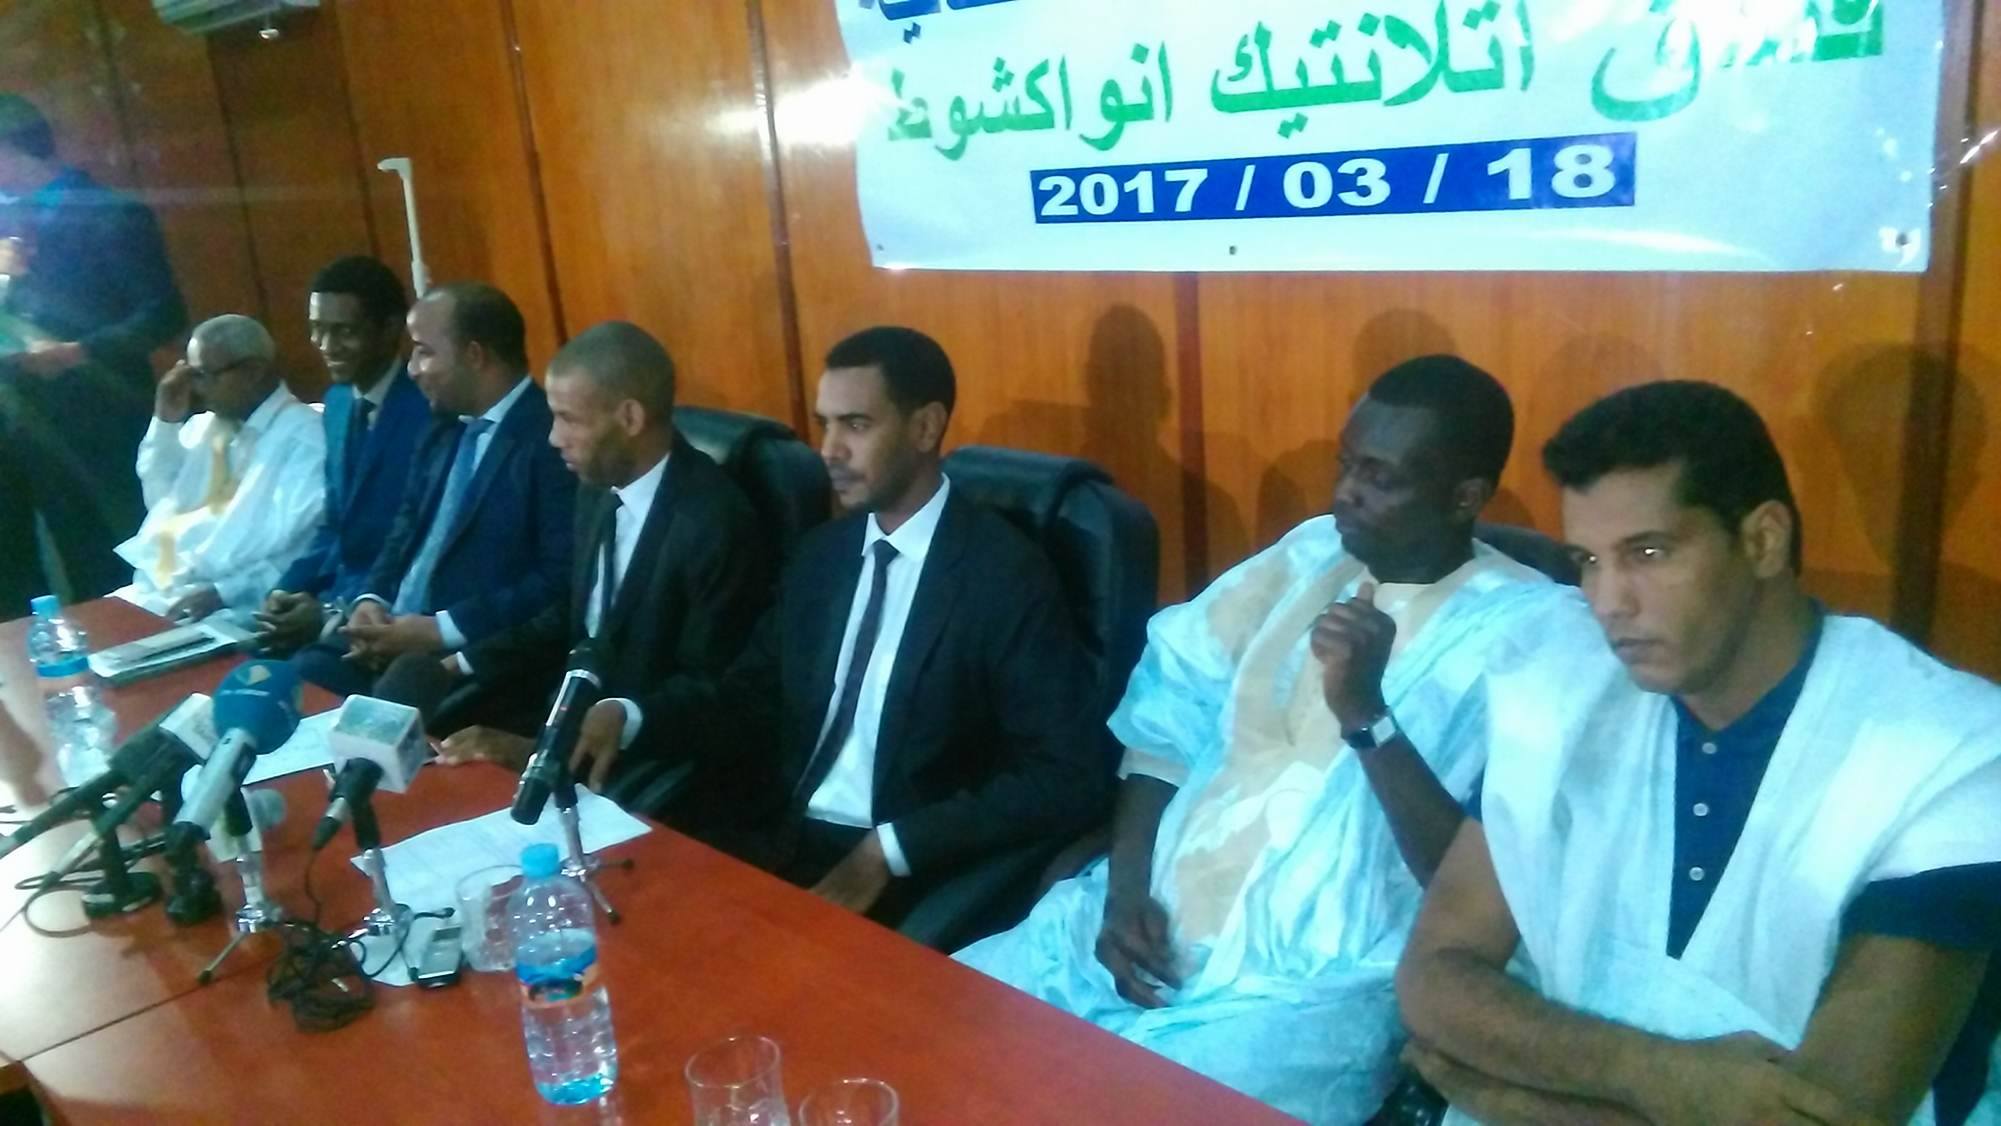 رابطة الدبلوماسيين الموريتانيين تنتخب مكتبا جديدا (صور)